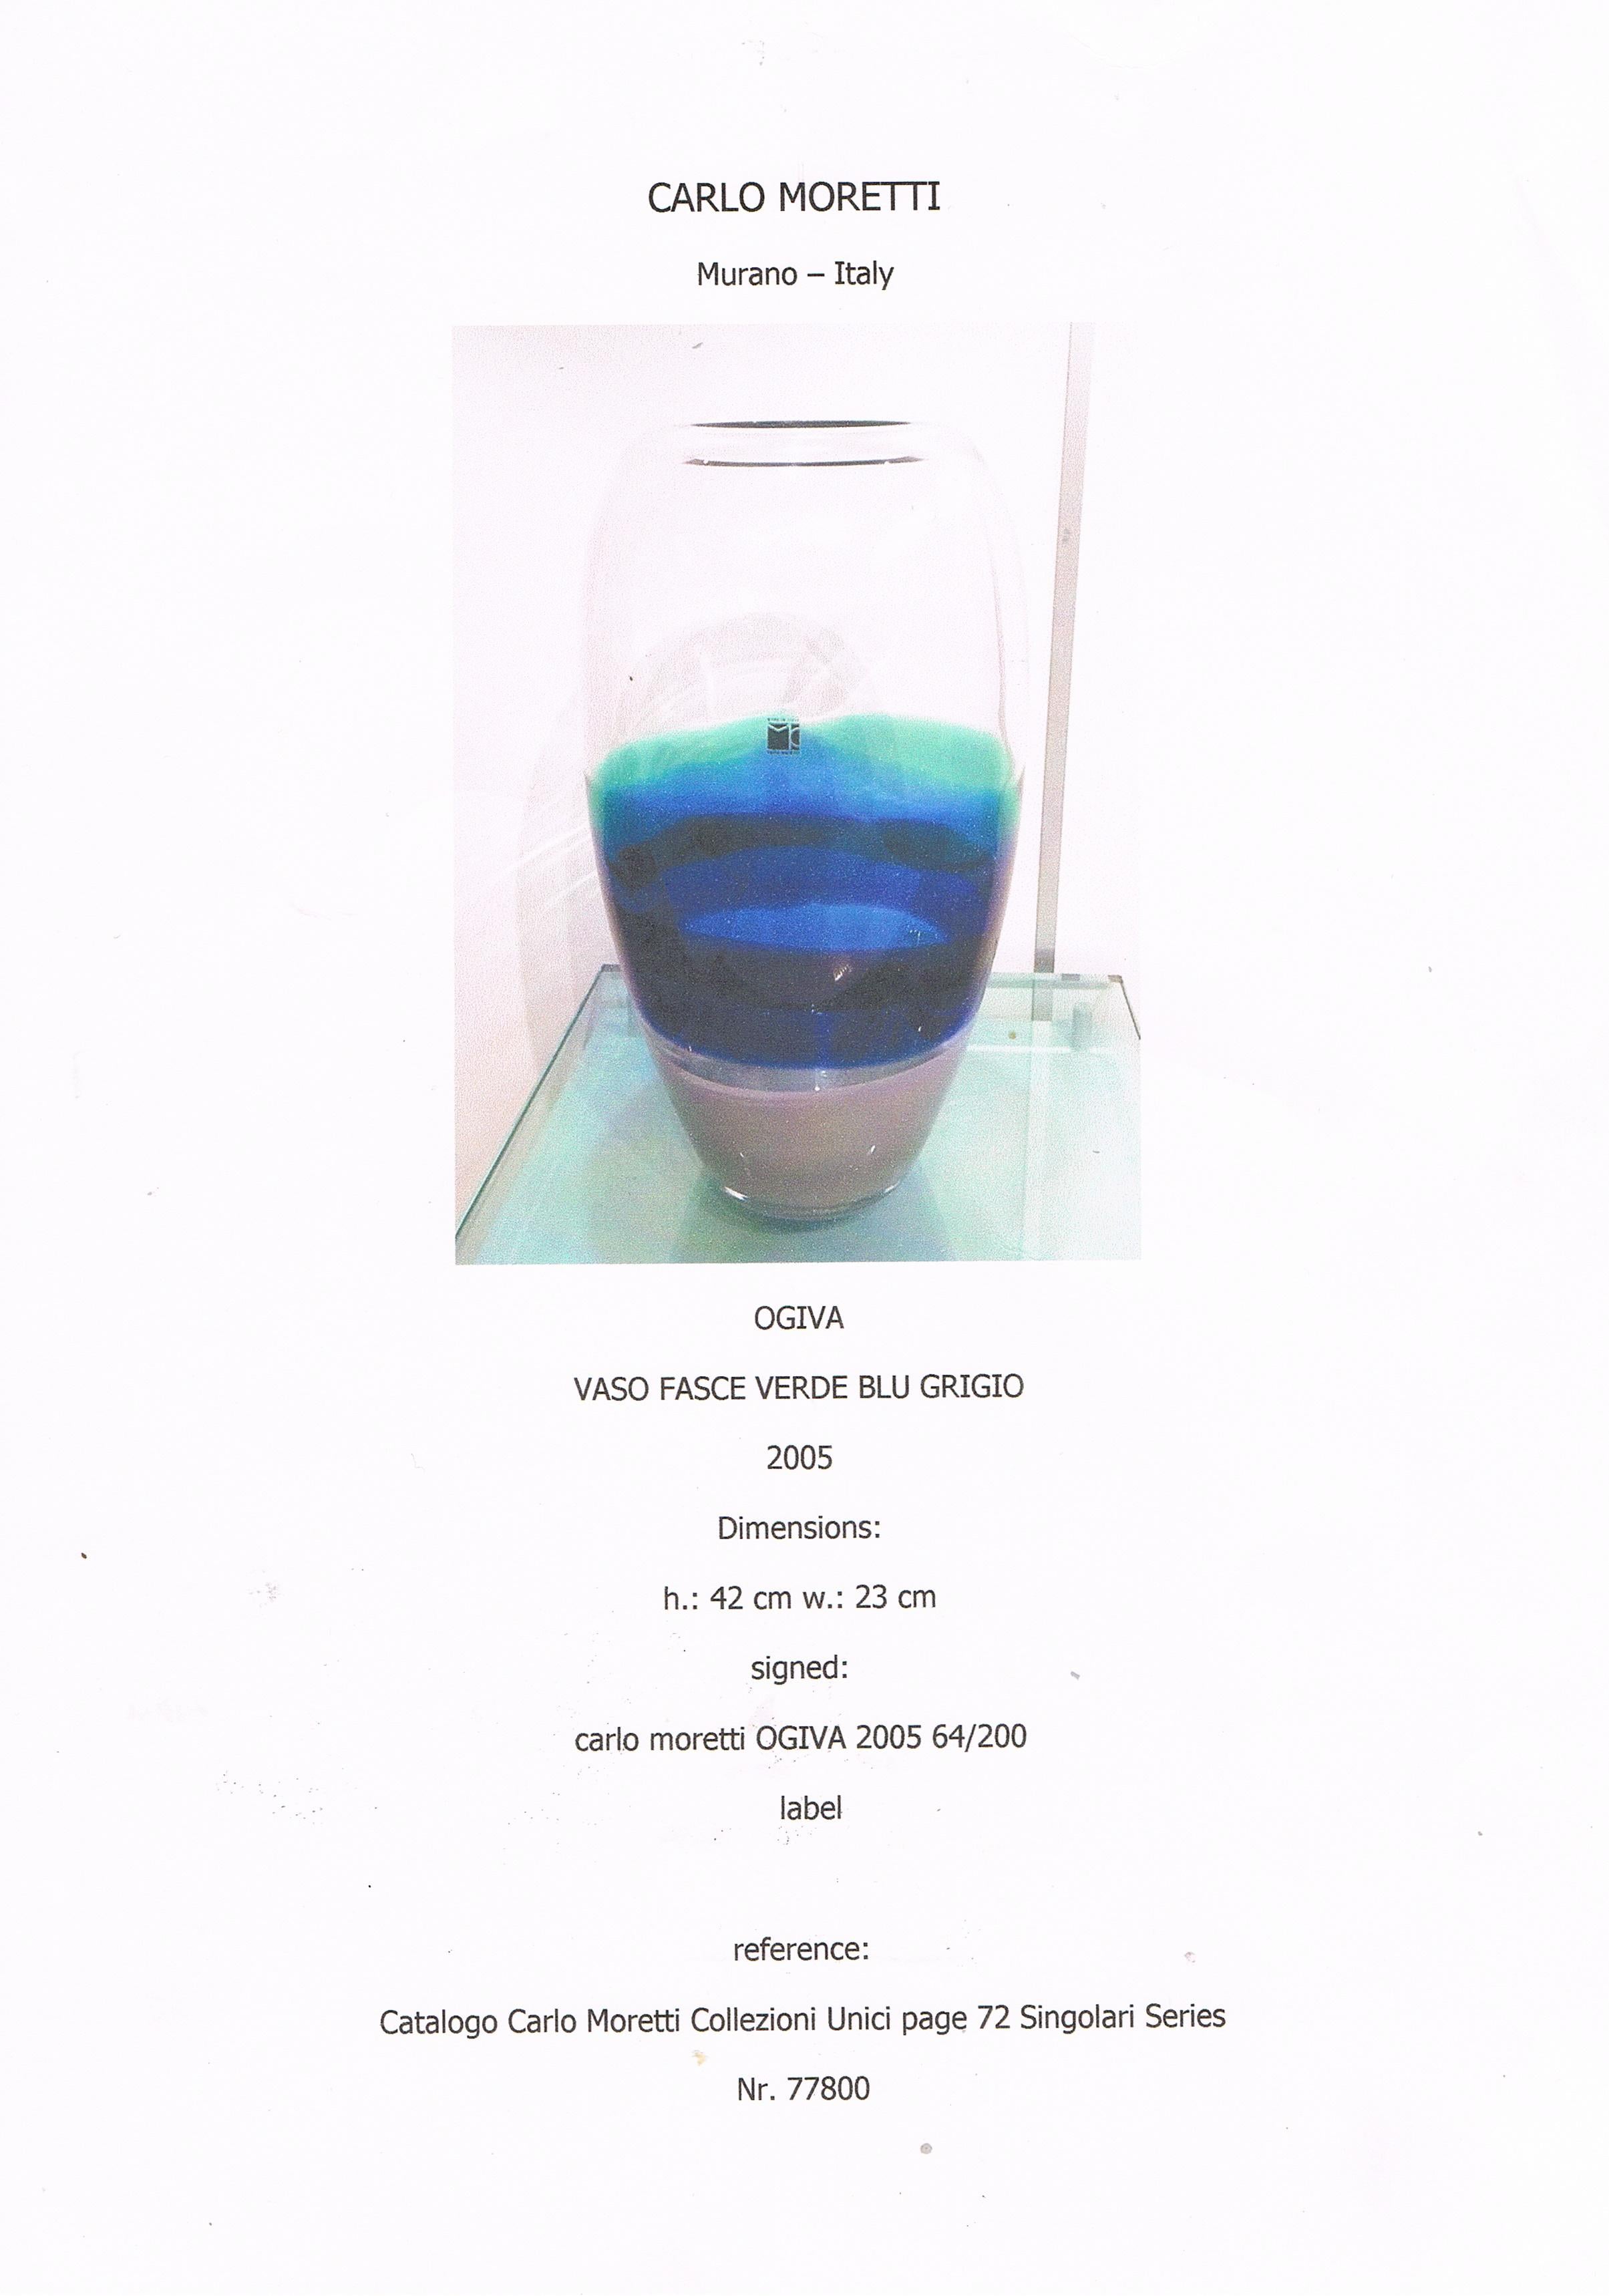 Unique Handmade Murano Glass Vase in Blue-Green-Black-Grey by Carlo Moretti 3